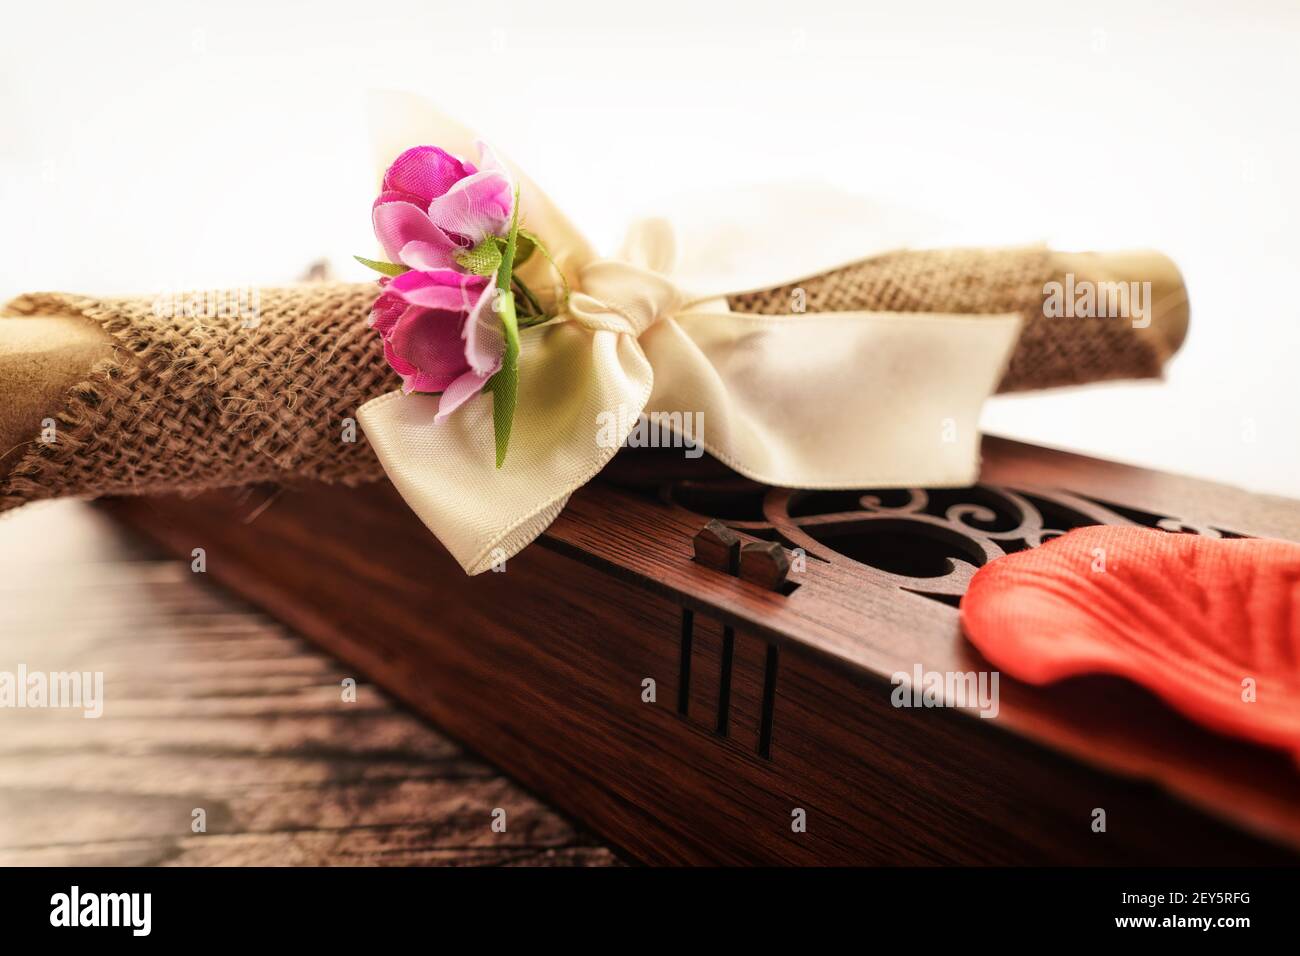 Une boîte en bois ornée de parchemin enveloppée de tissu et fleurs Banque D'Images